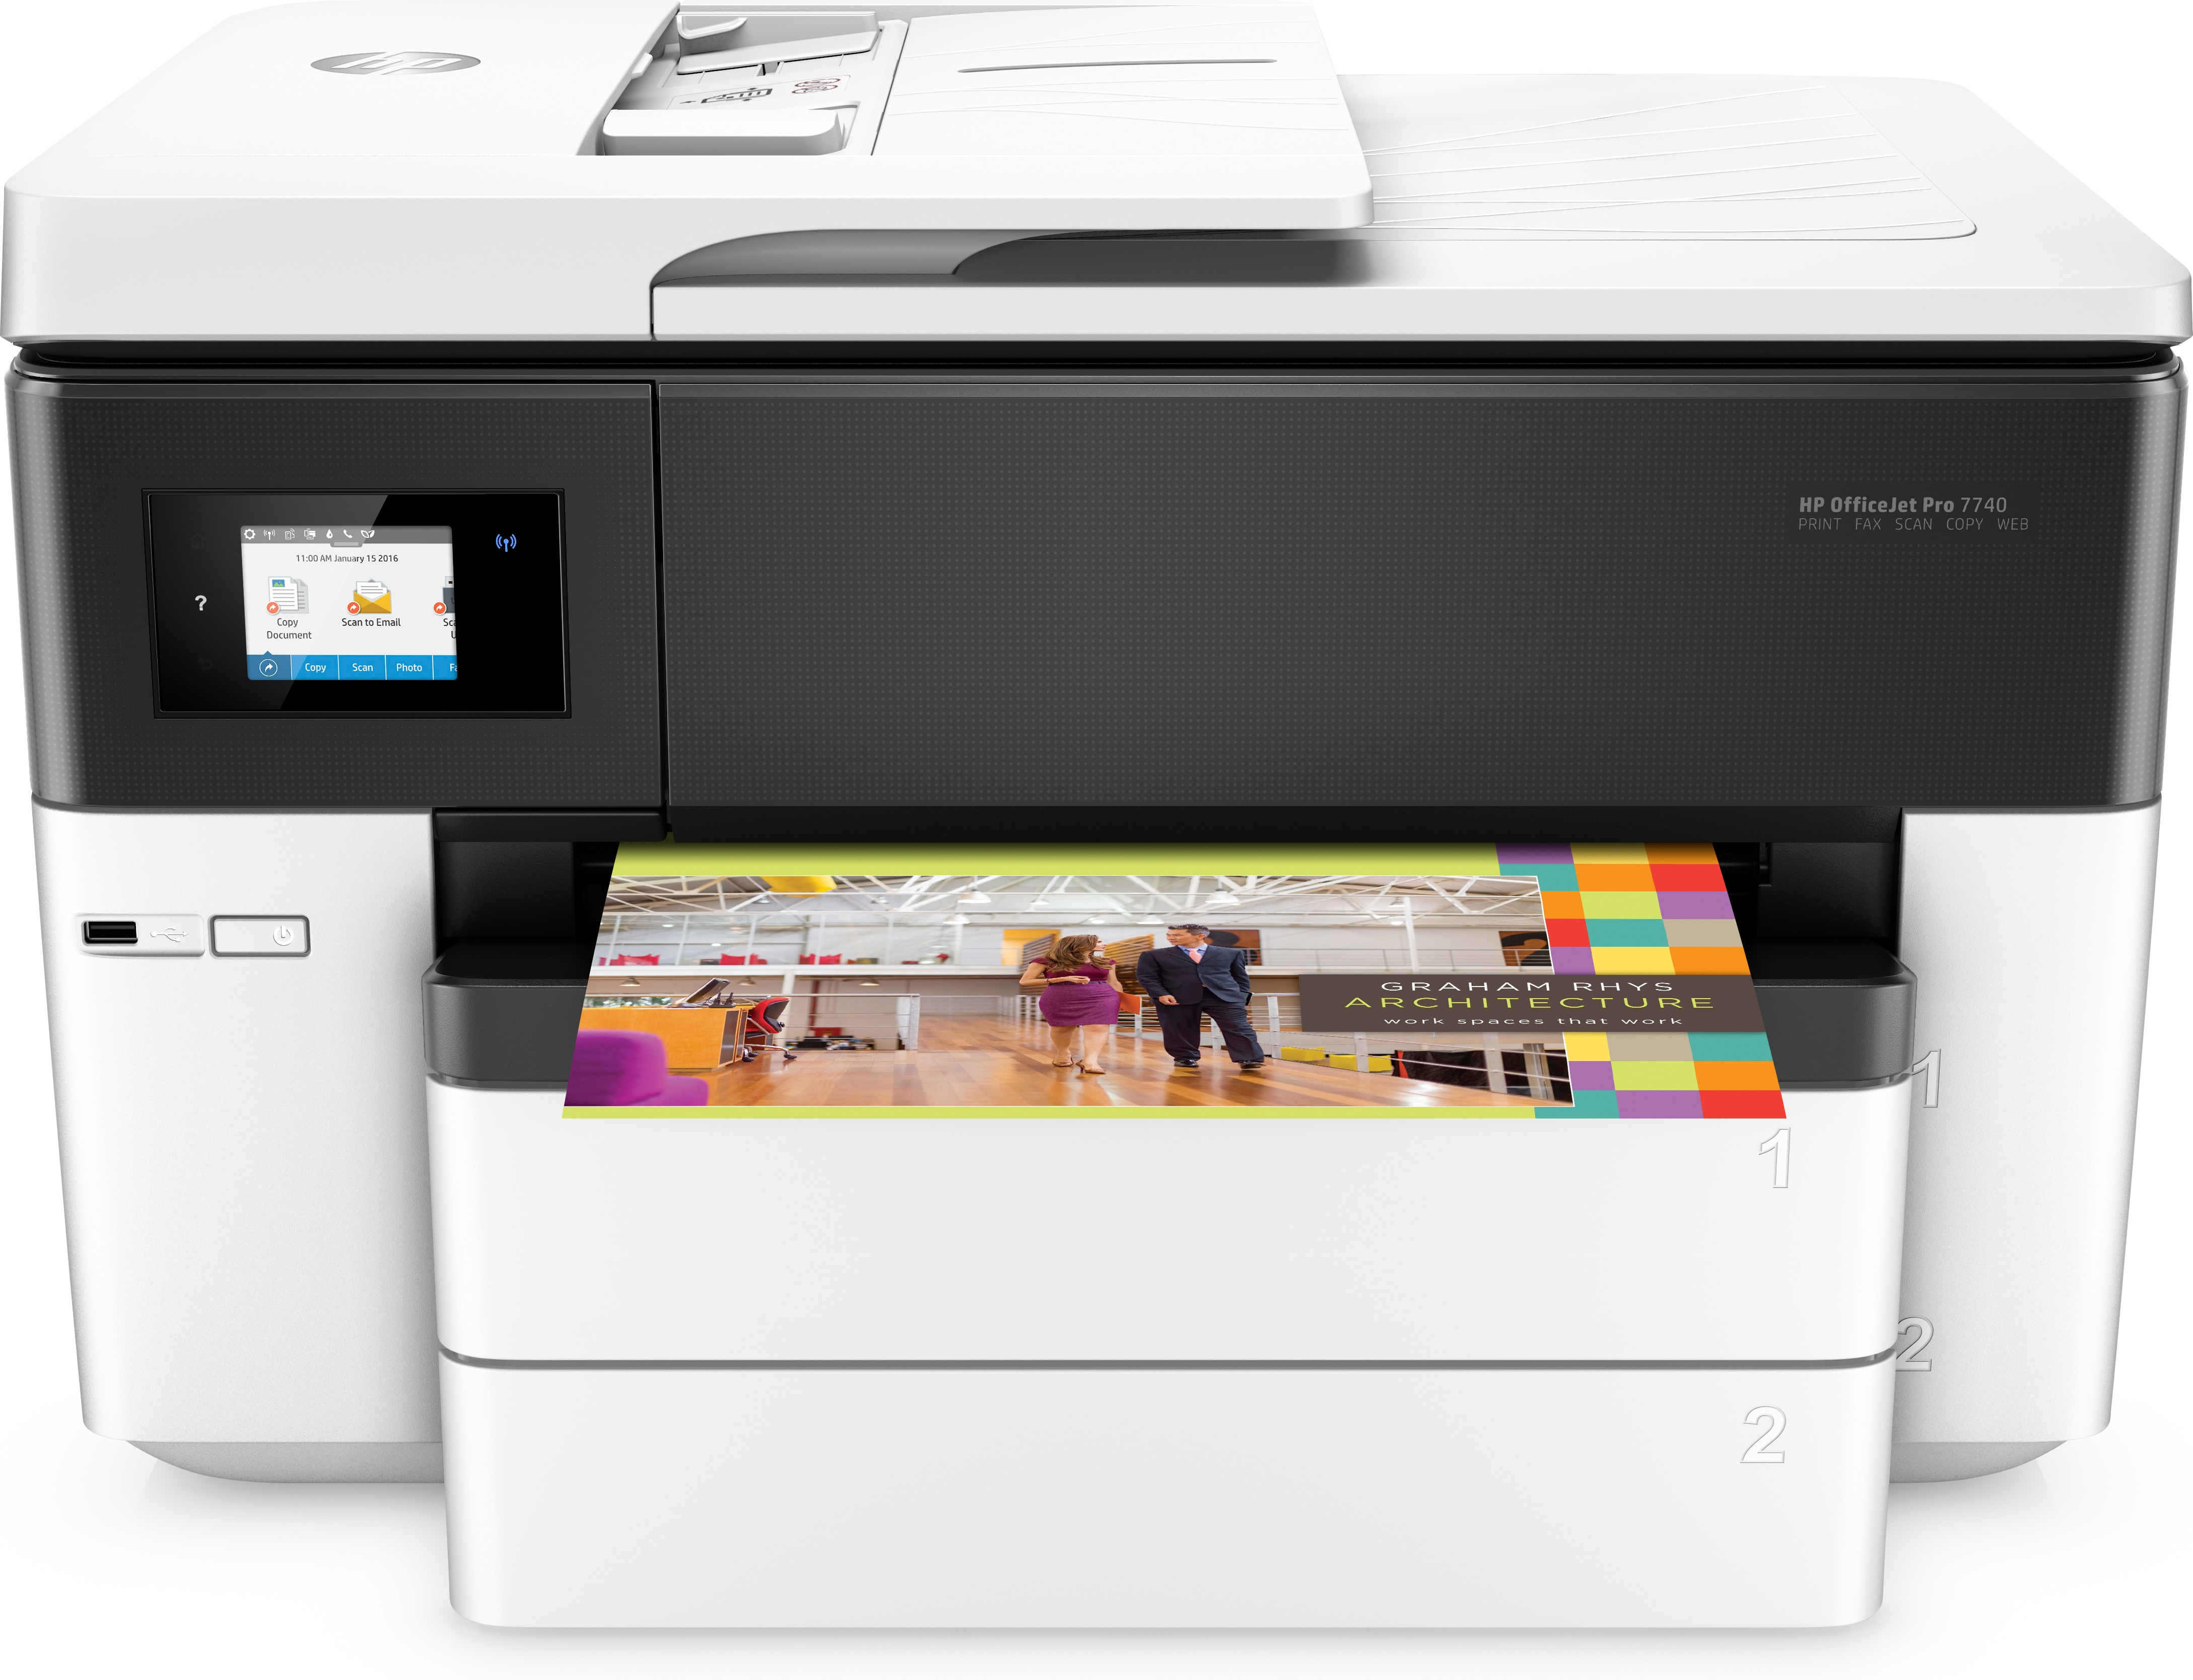 HP HP OfficeJet Pro 7740 breedformaat All-in-One printer, Kleur, Printer voor Kleine kantoren, Printen, kopi&#235;ren, scannen, faxen, Invoer voor 35 vel; Scan naar e-mail